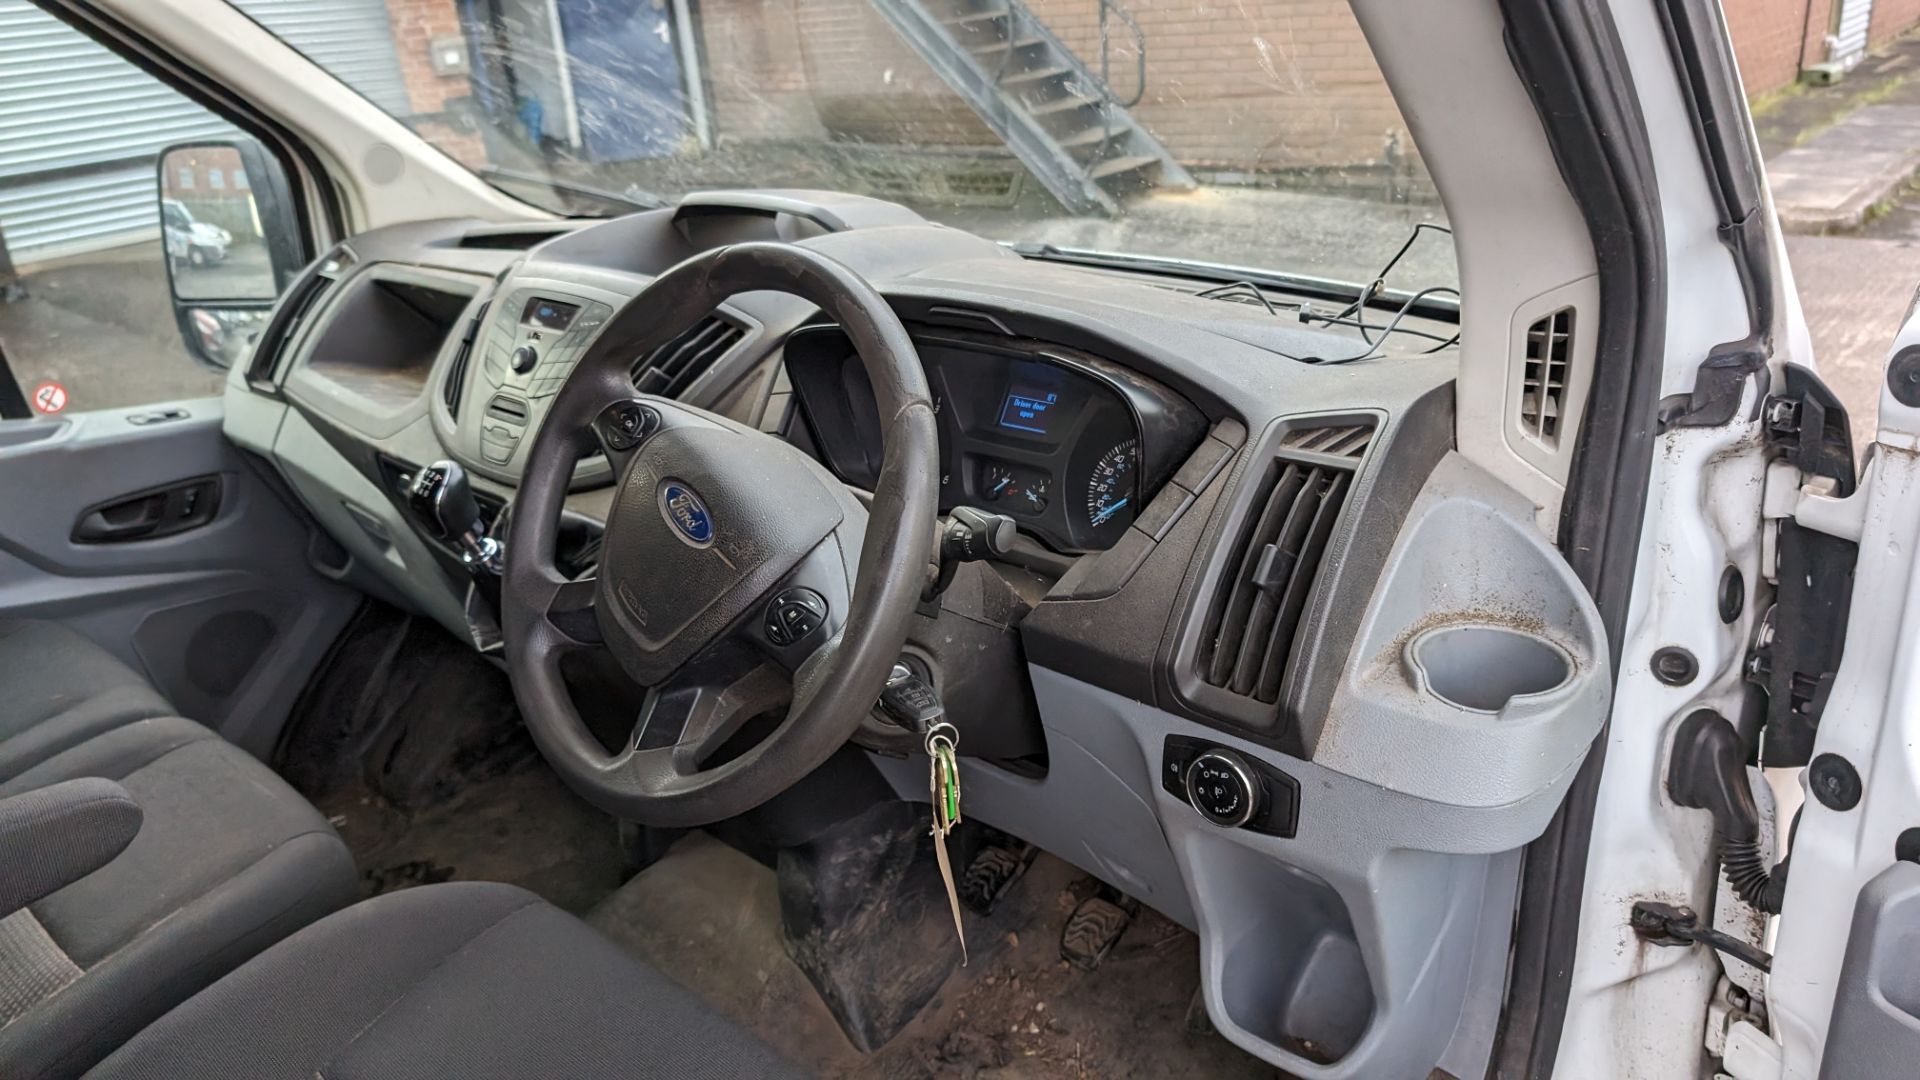 2015 Ford Transit van - Image 18 of 25